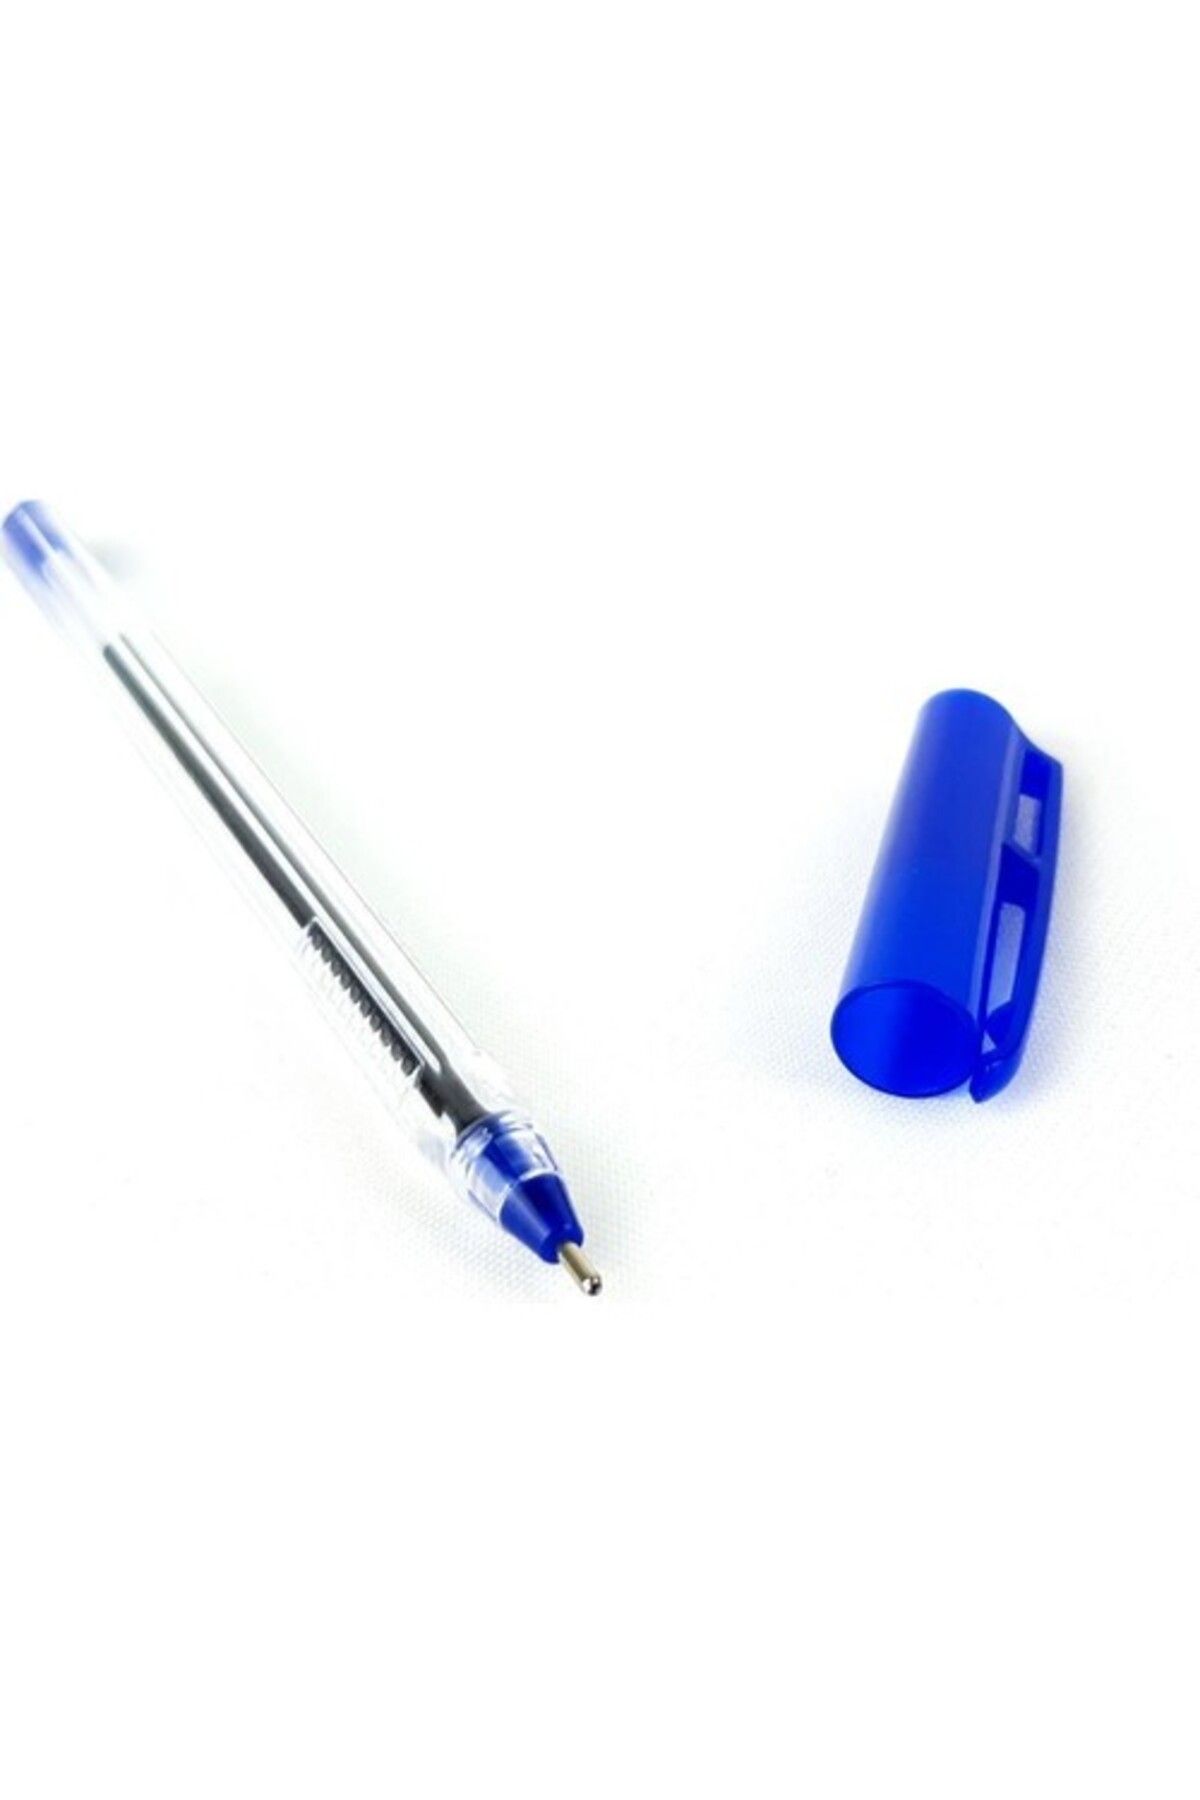 Pensan Tükenmez Kalem Üçgen 50 Li 1.0 Mm Mavi